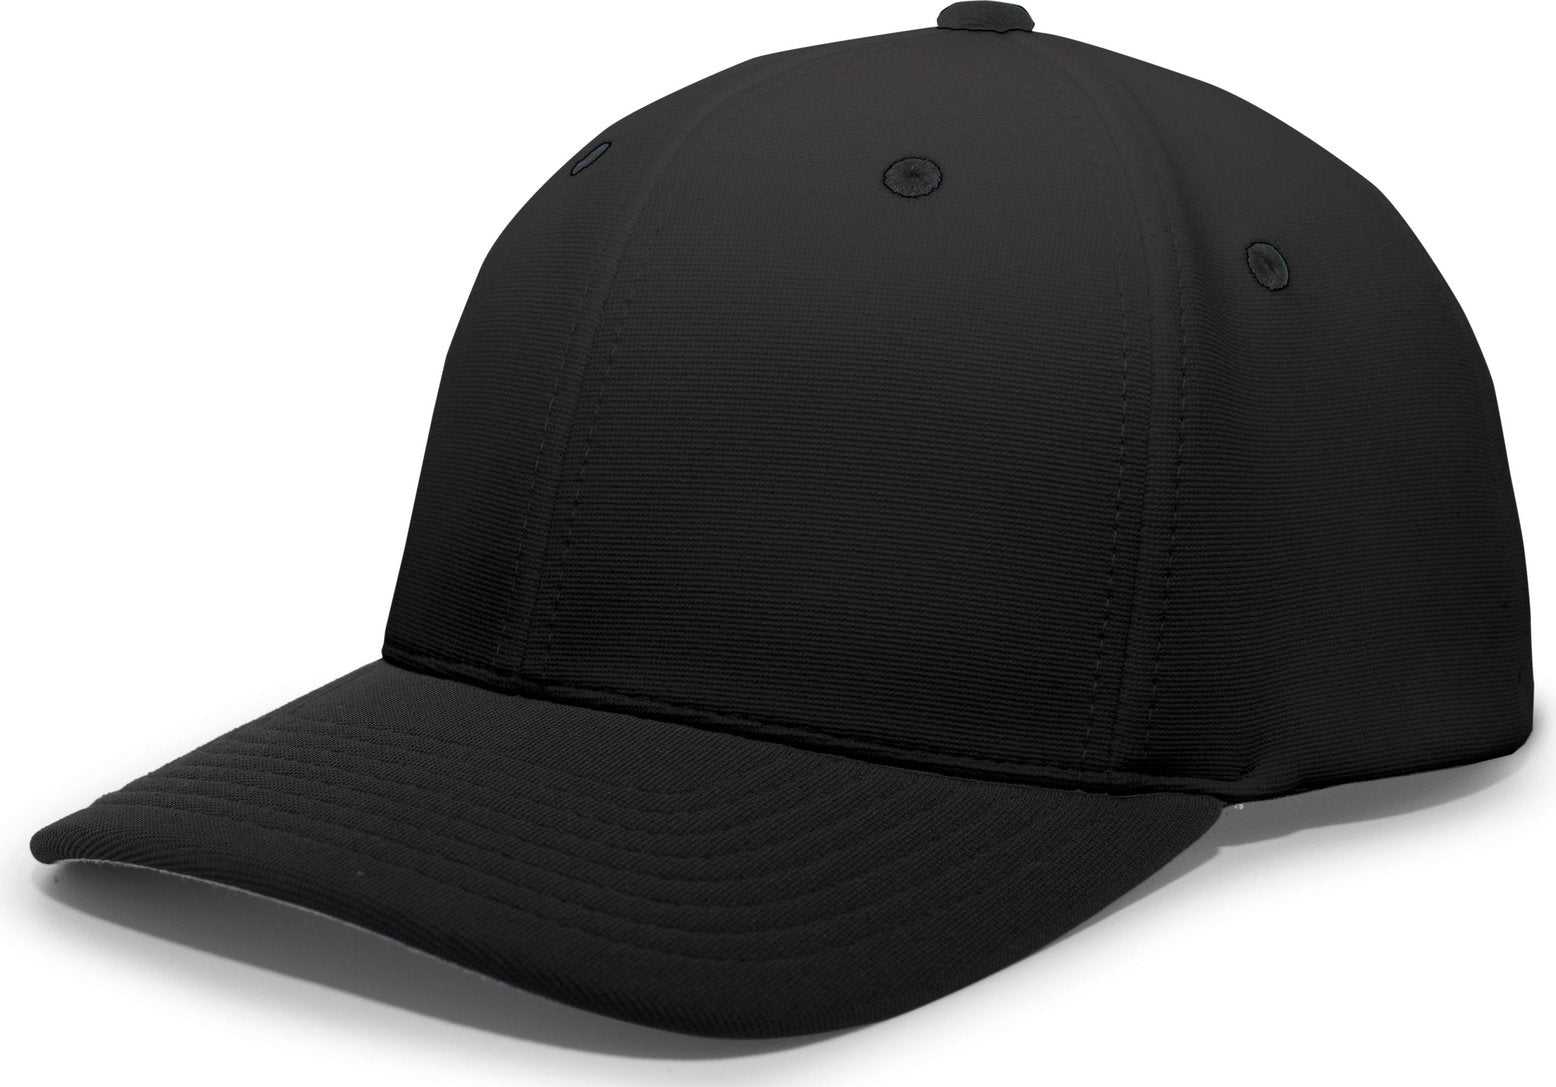 Pacific Headwear 498F M2 Performance Flexfit Cap - Black - HIT a Double